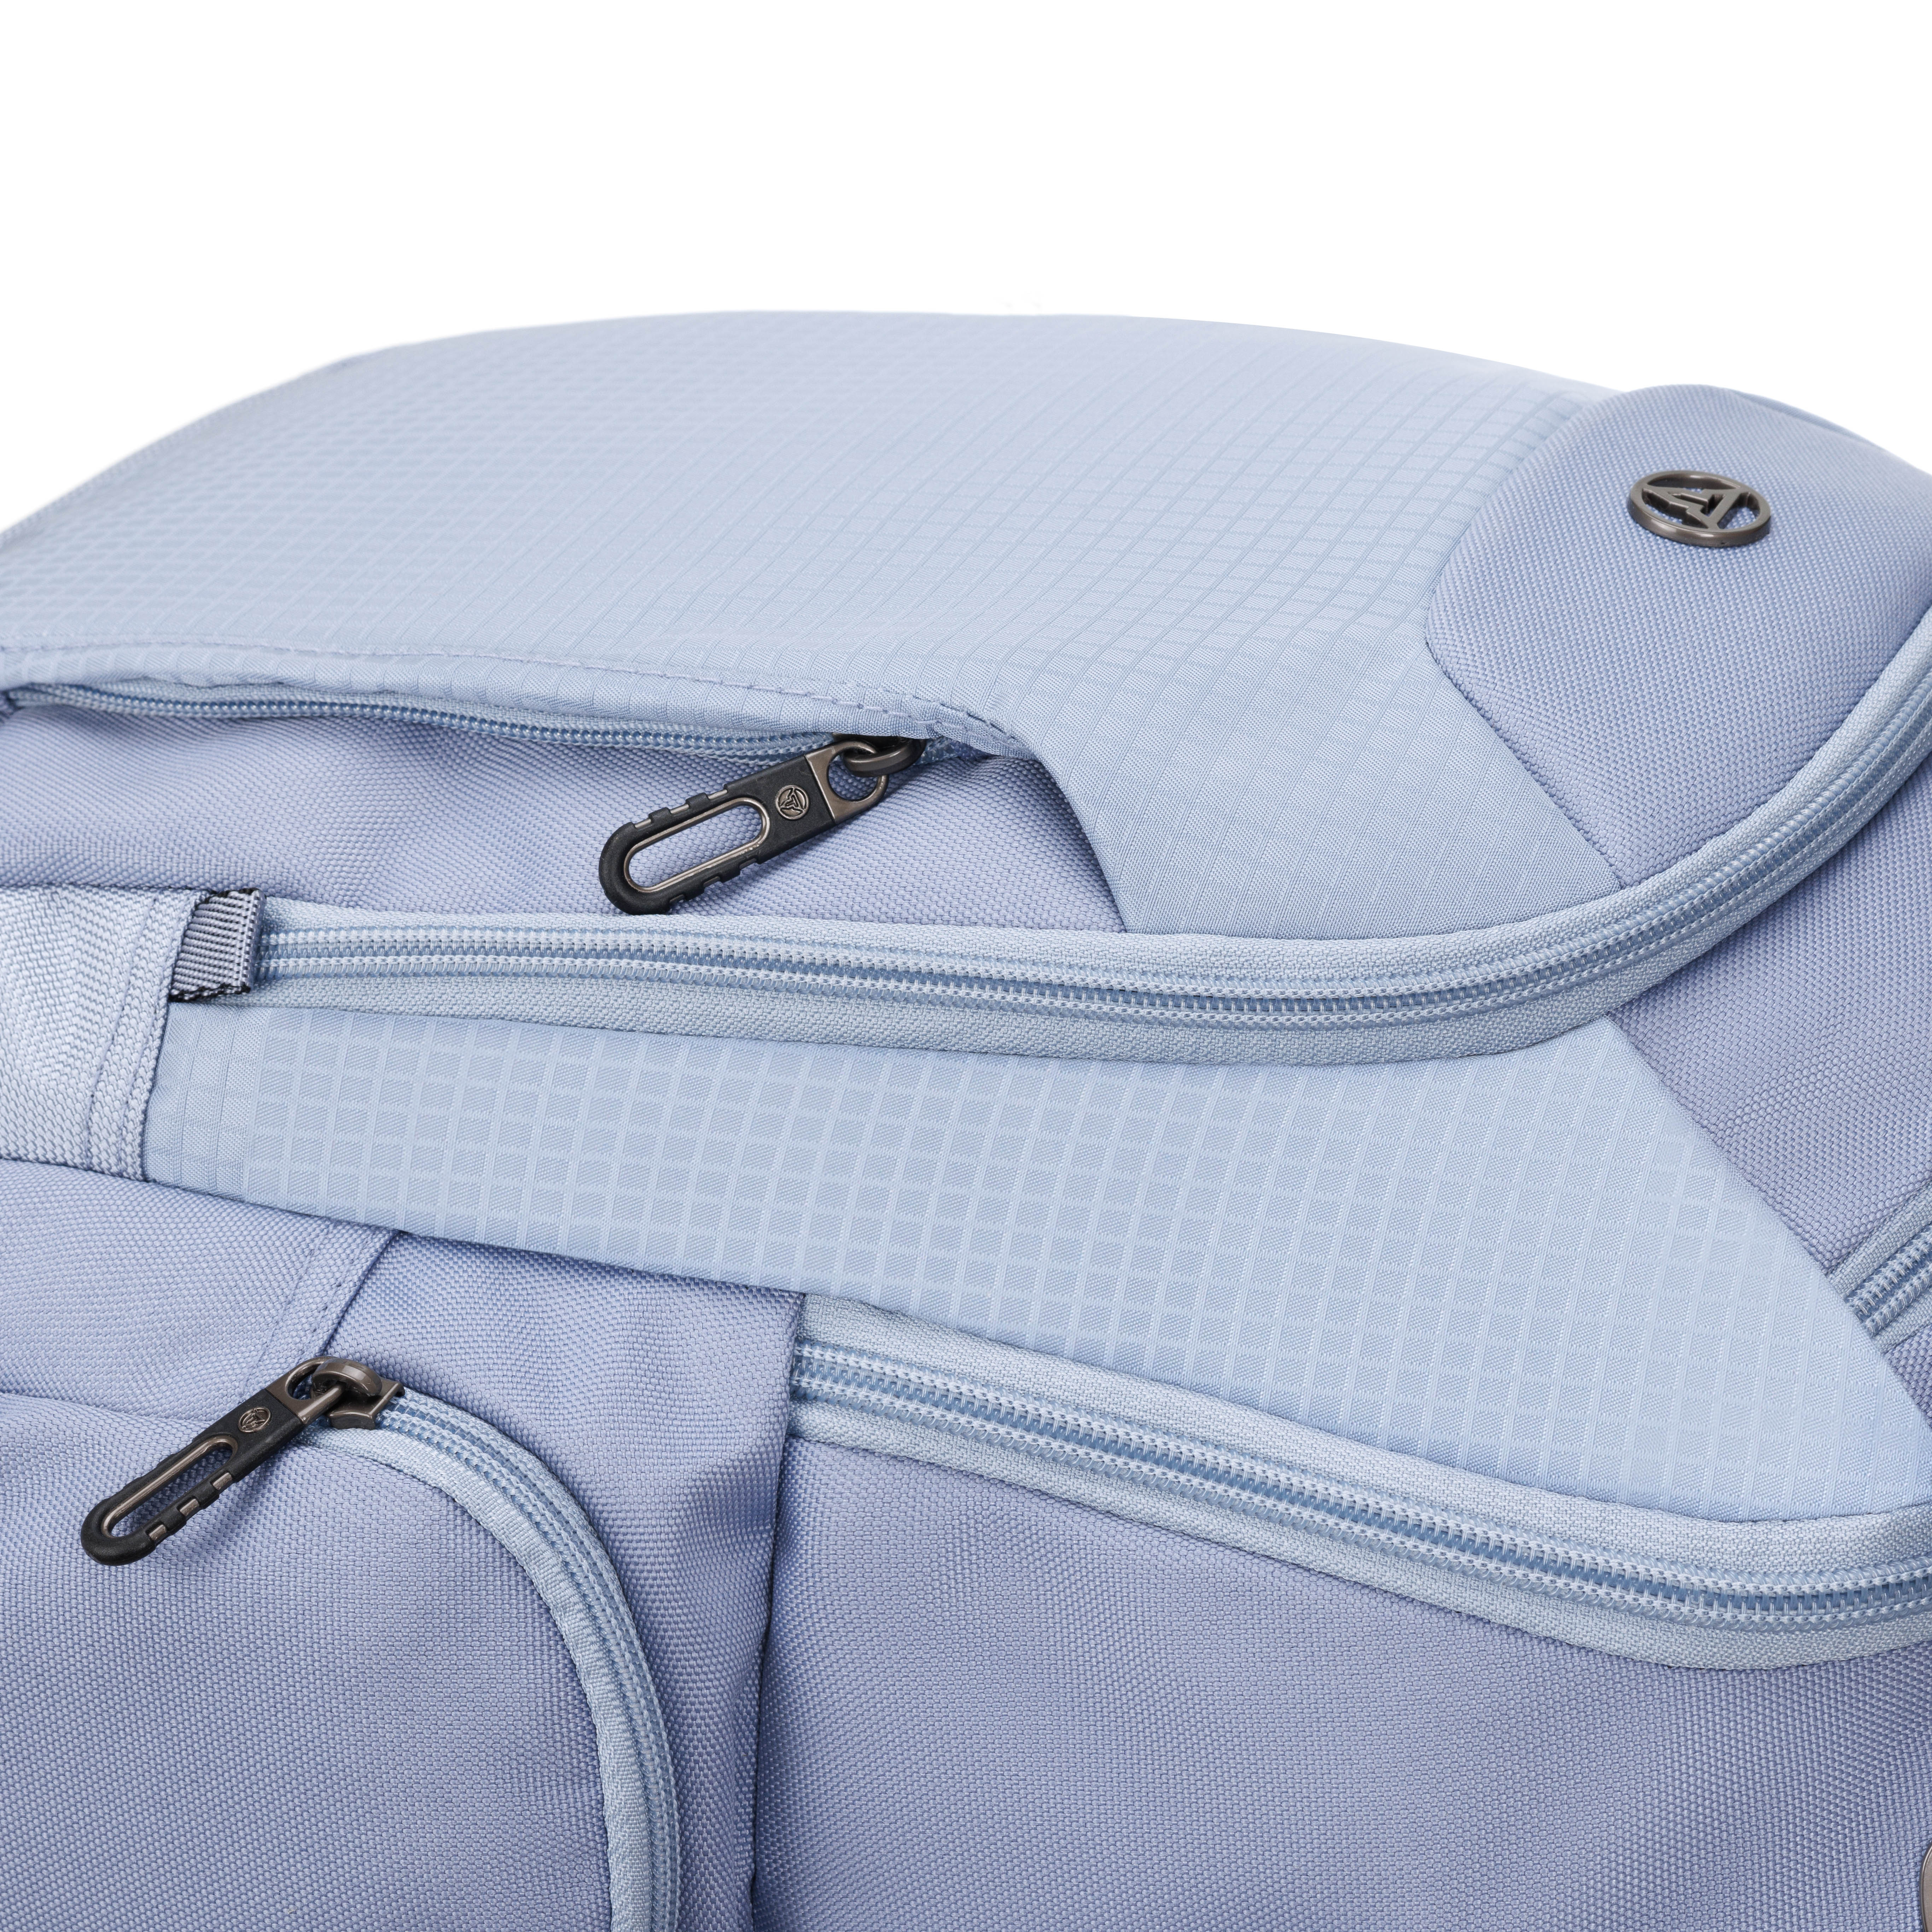 Рюкзак TORBER XPLOR с отделением для ноутбука 15 дюймов серый - фото 15